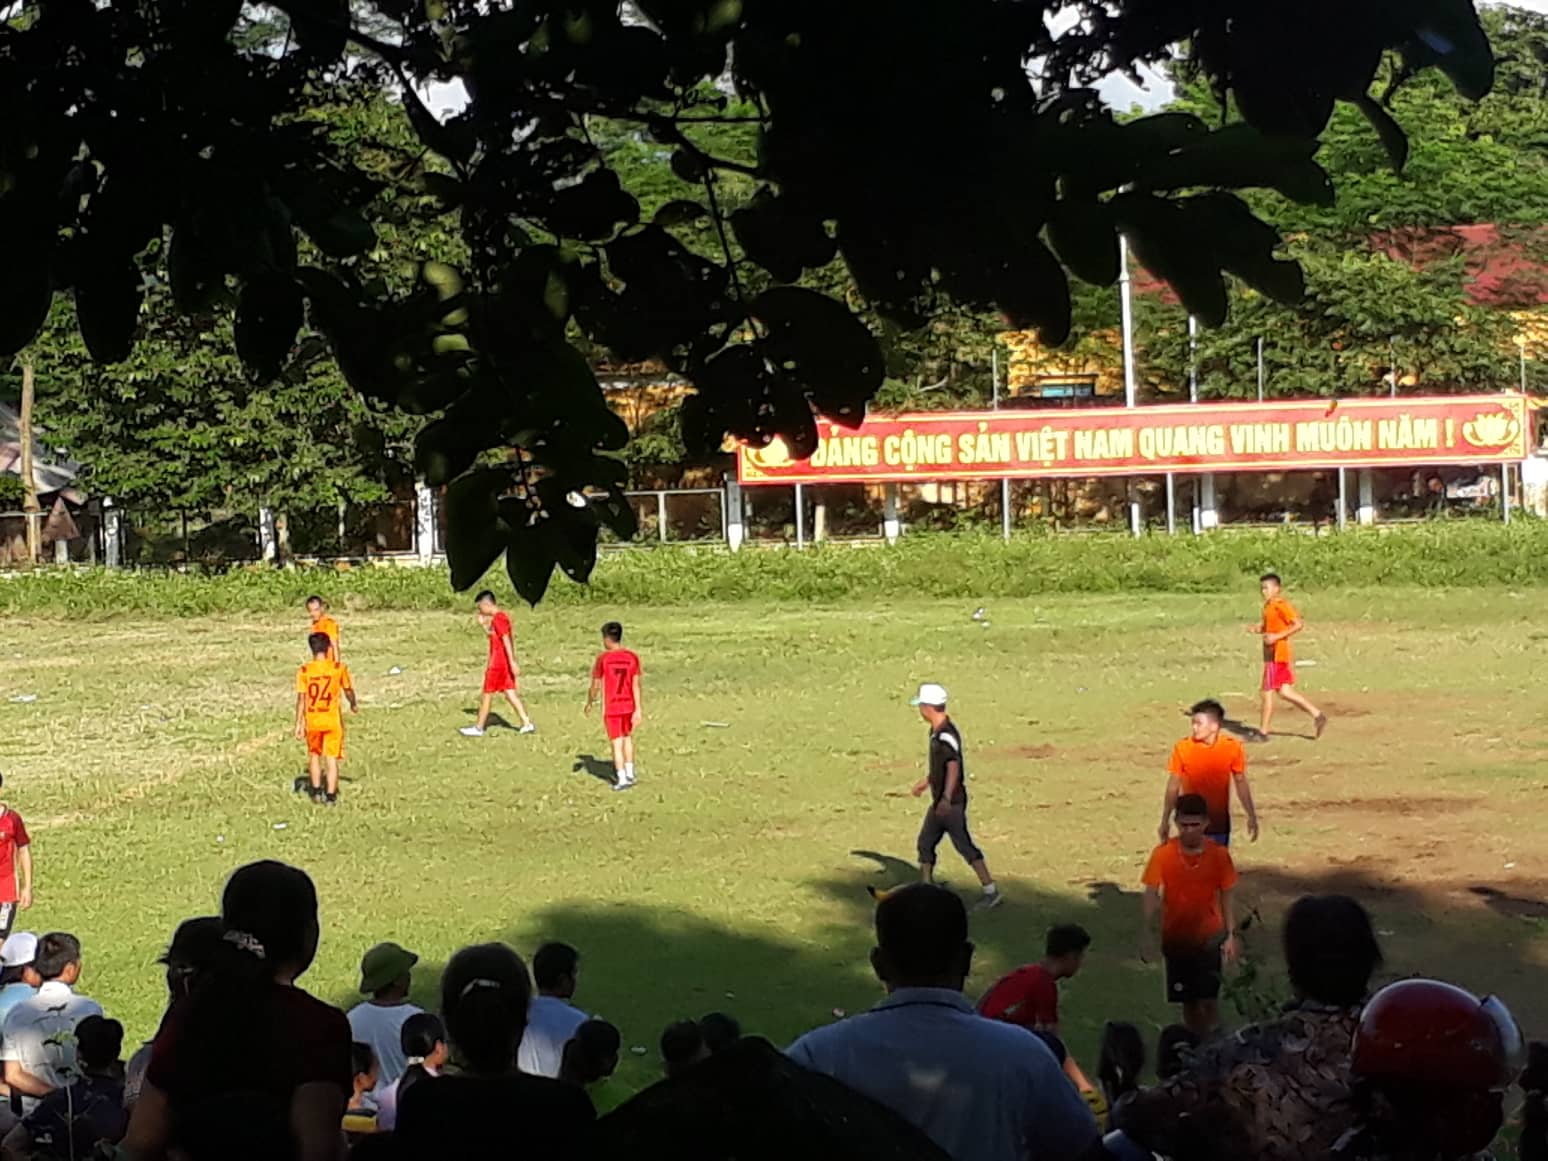 Chi đoàn thôn Vĩnh Thành tổ chức giải bóng đá chào mừng ngày Quốc khánh mùng 02-9 mở rộng